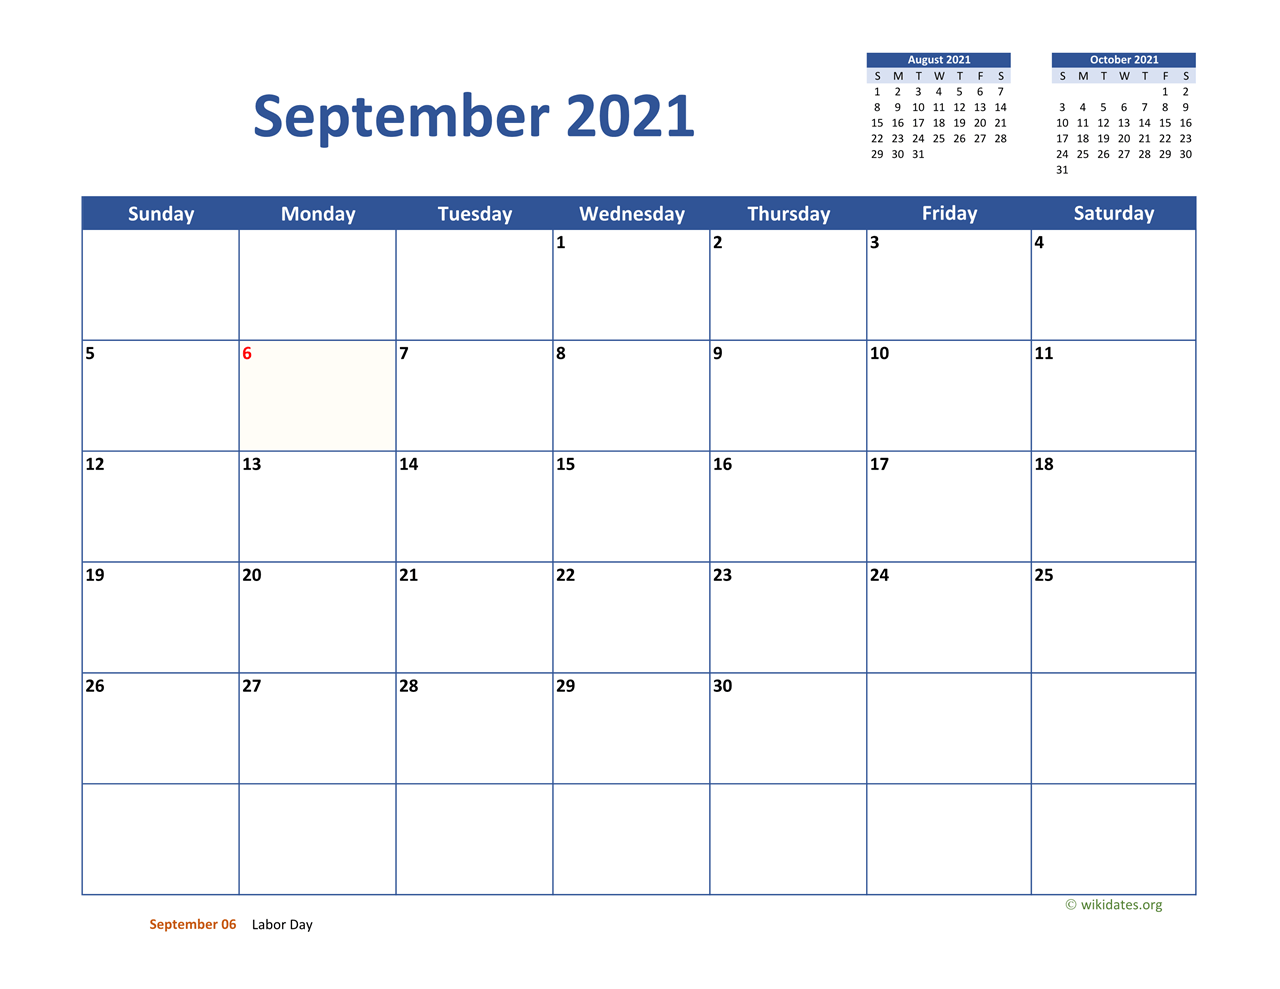 September 2021 Calendar Classic | WikiDates.org